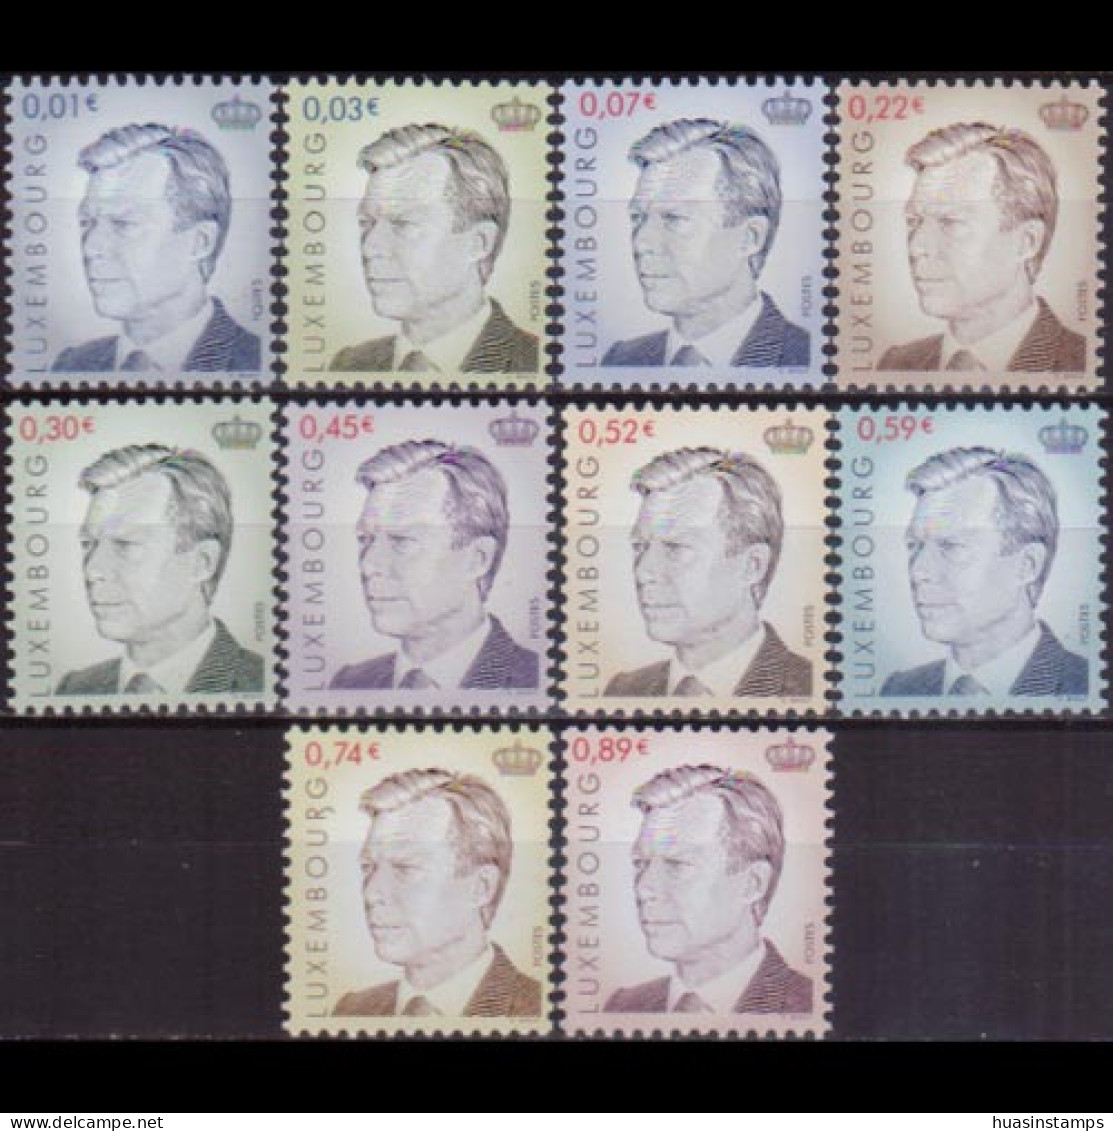 LUXEMBOURG 2001 - #1072-81 Grand Duke Henri Set Of 10 MNH - Ongebruikt